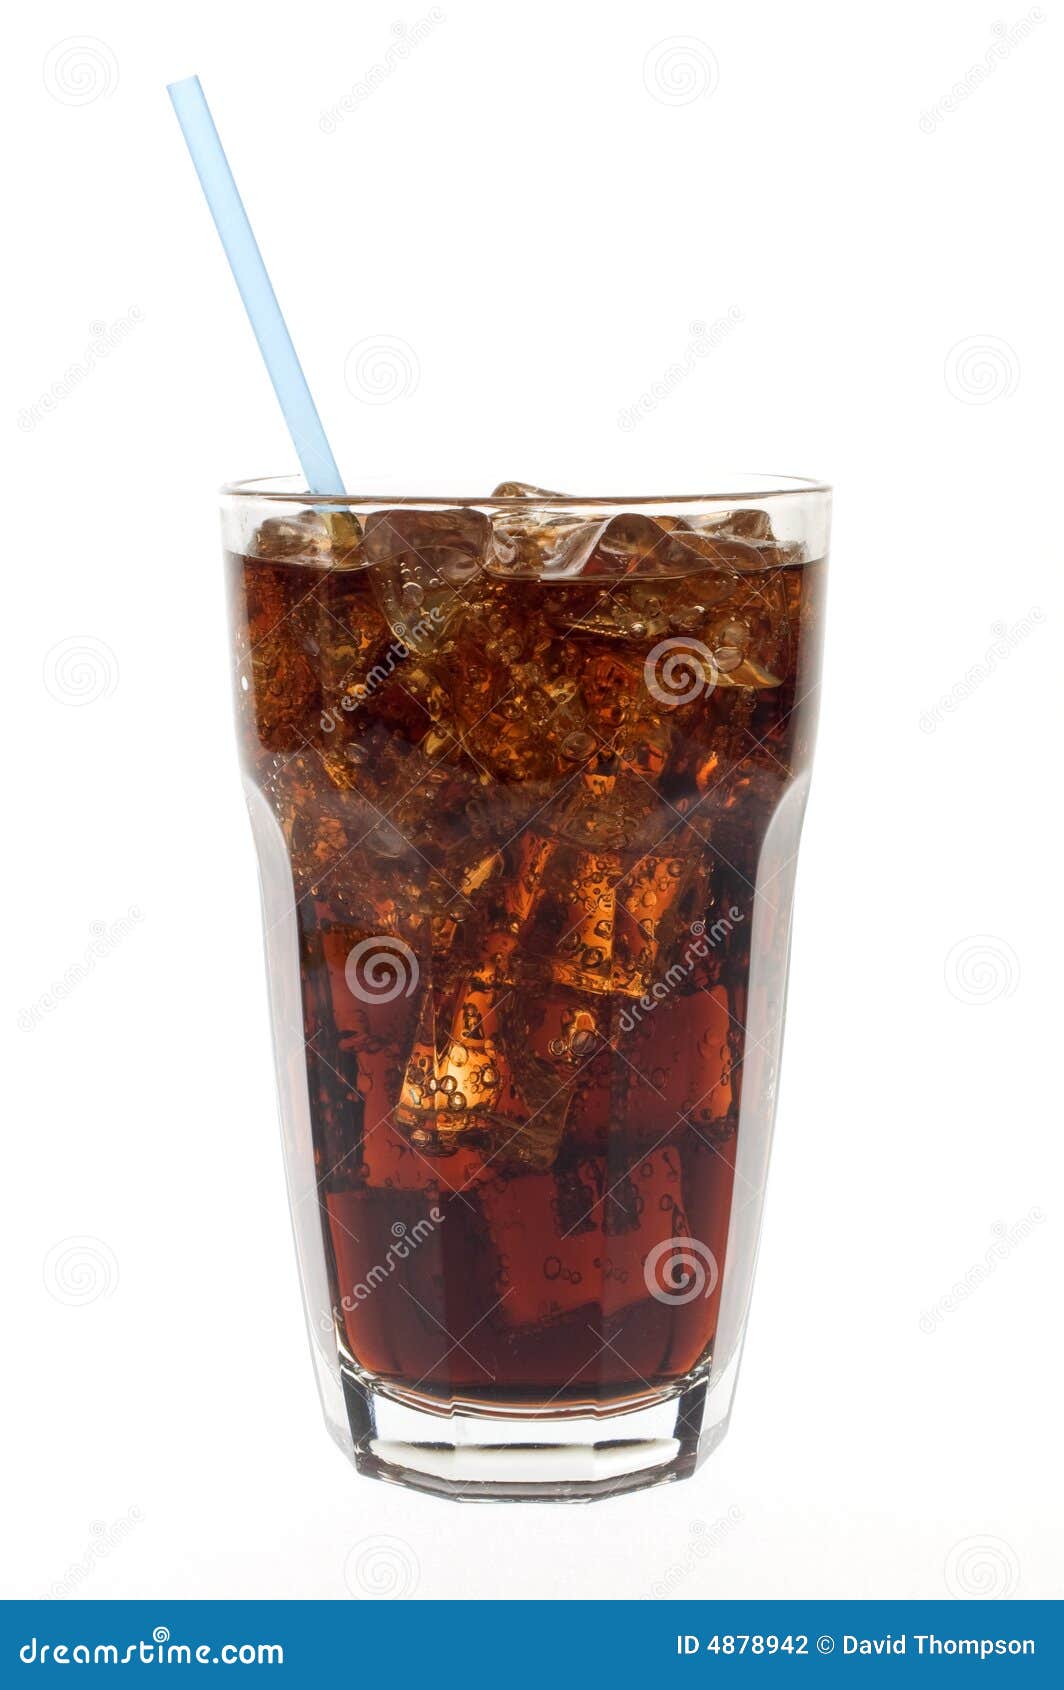 glass of soda with straw